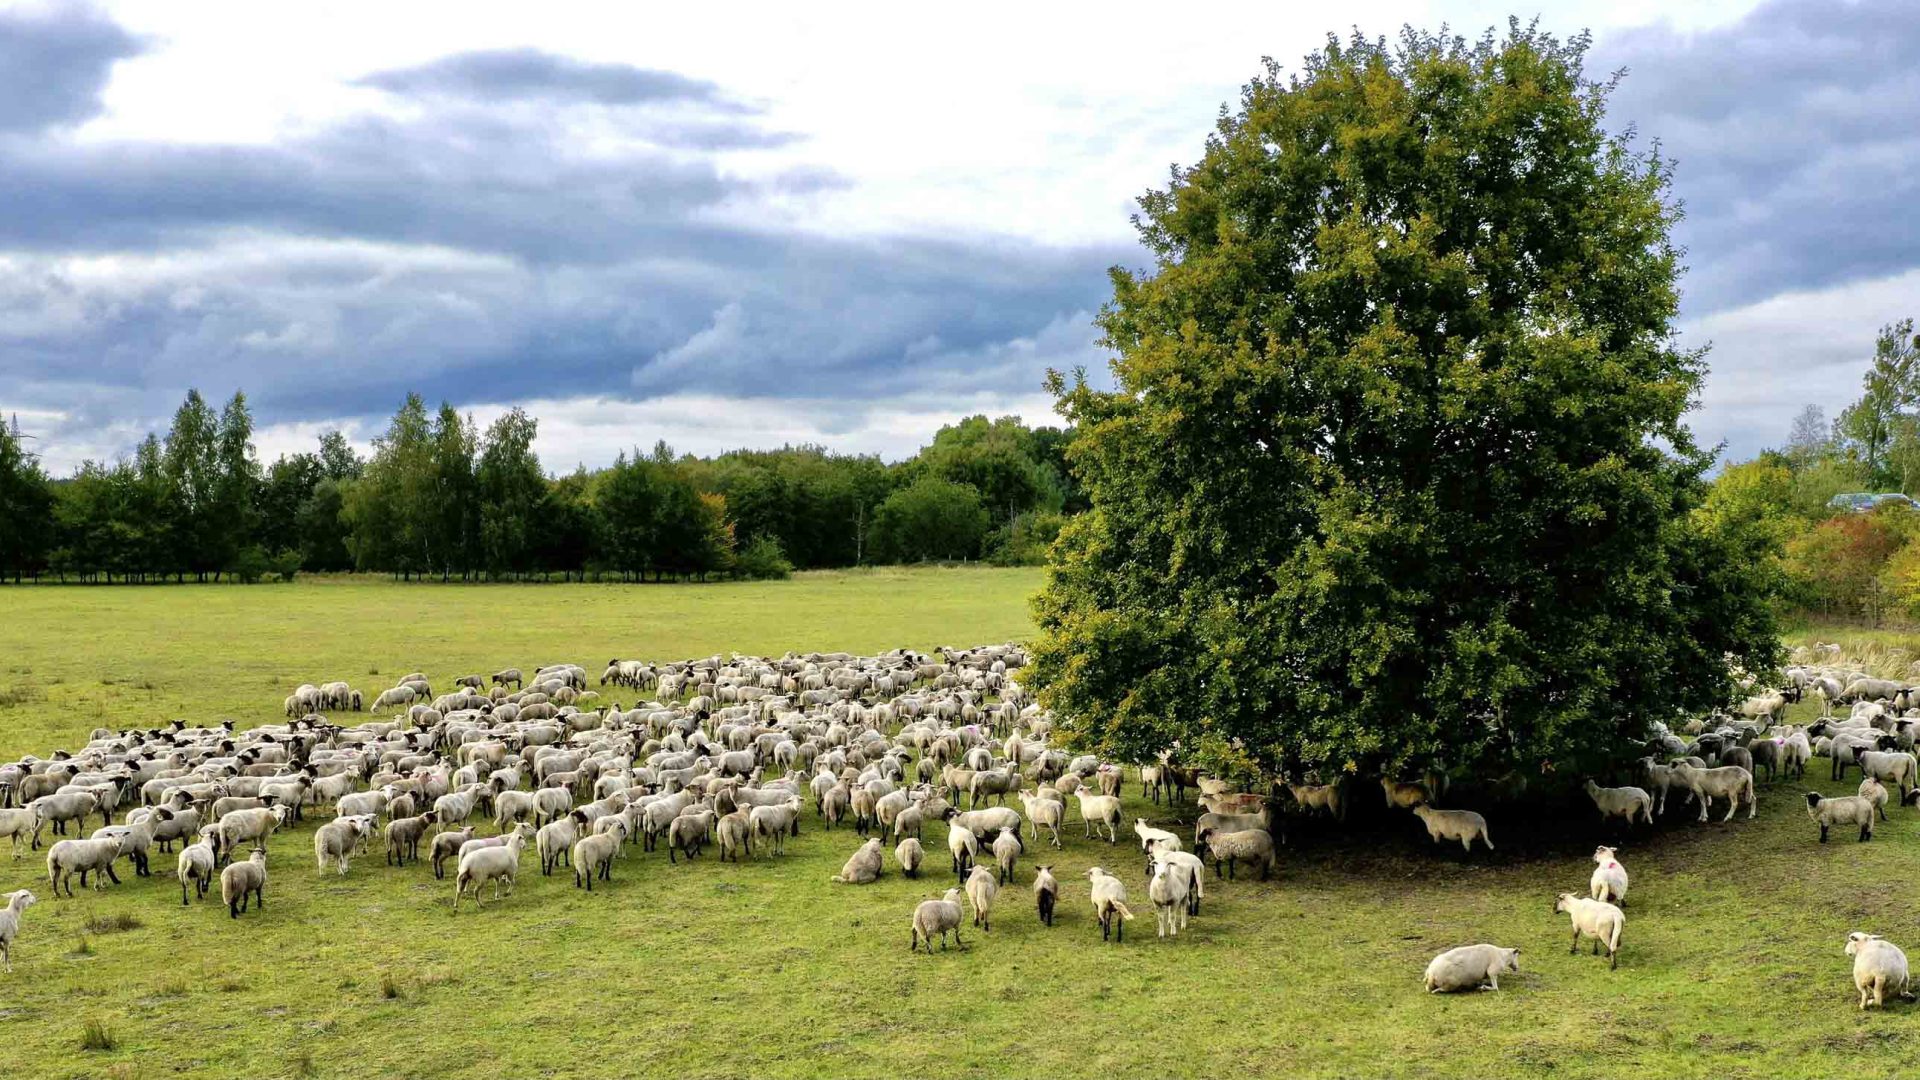 Sheep graze in a pasture.